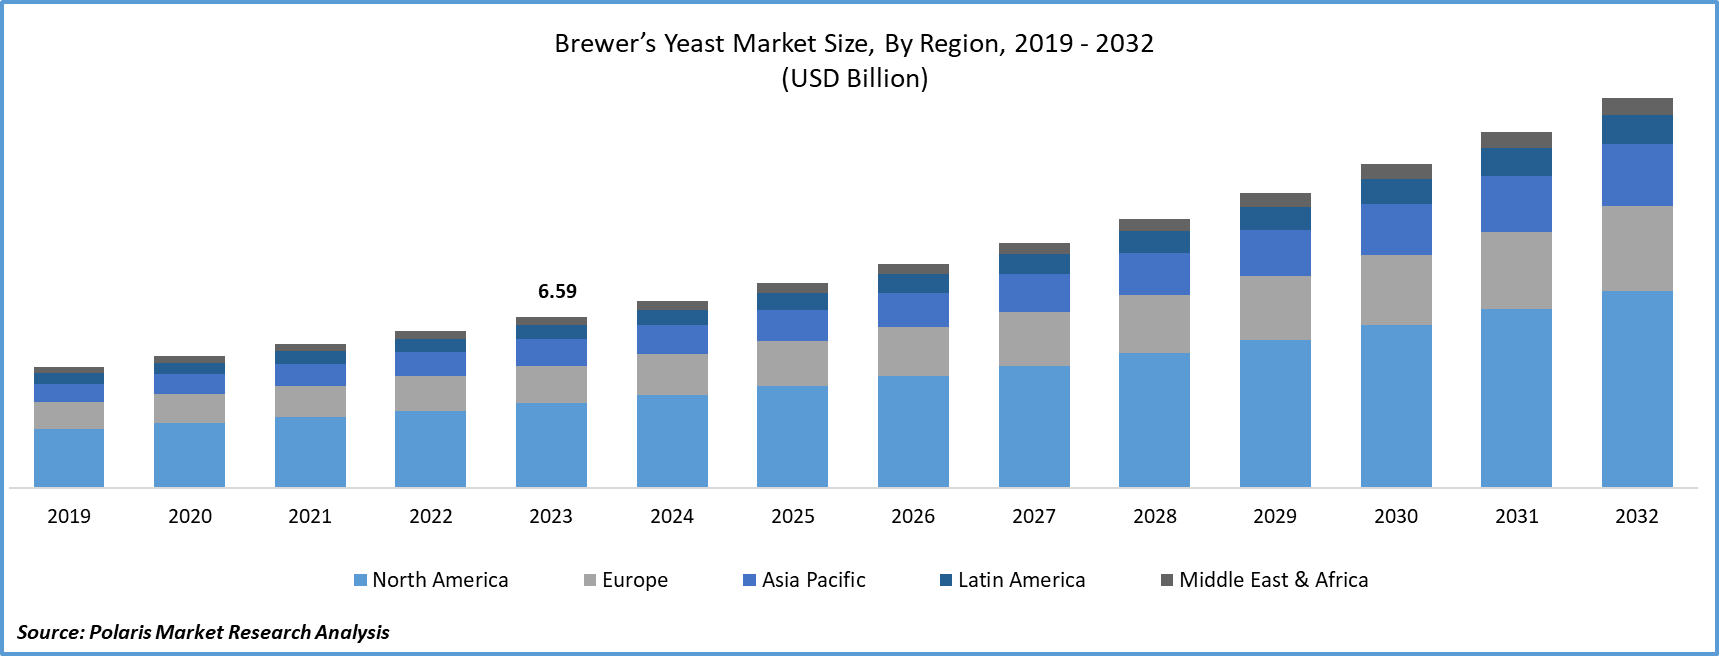 Brewer’s Yeast Market Size